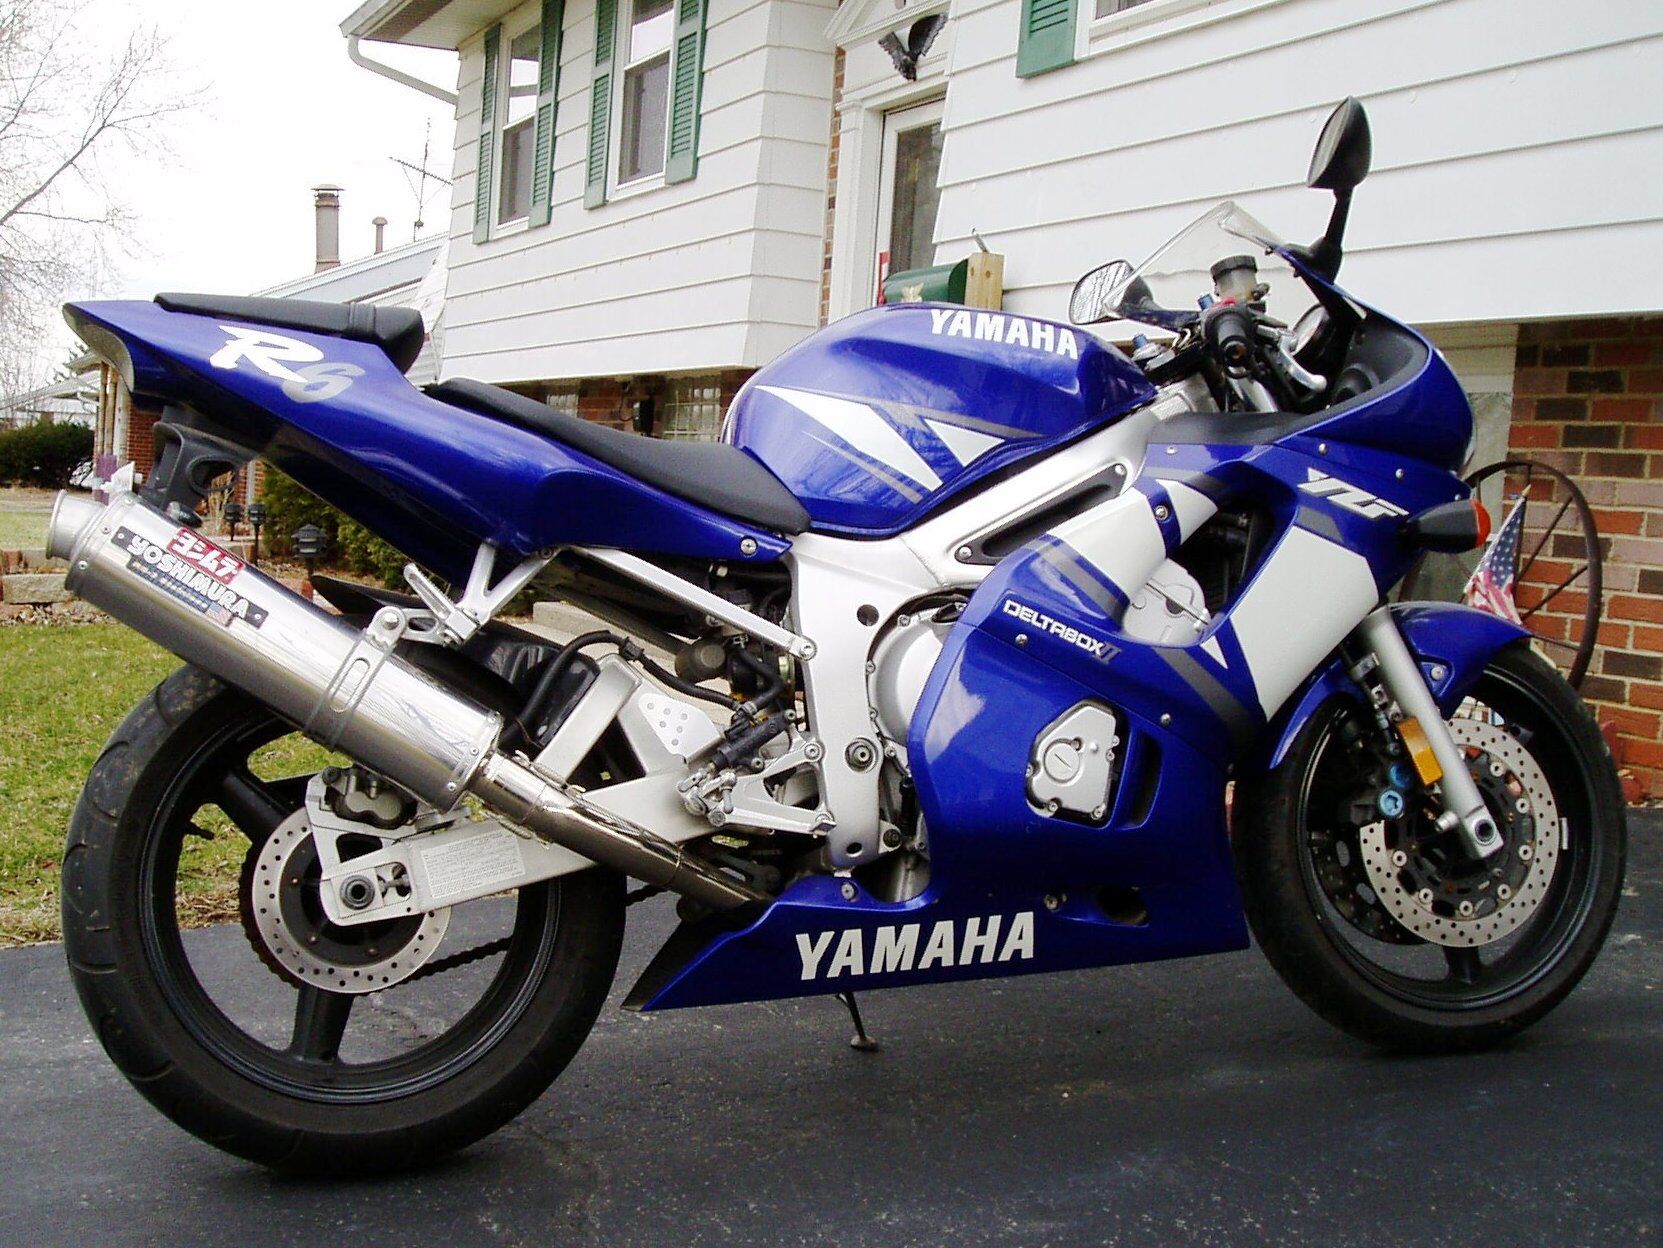 Ямаха спорт до 700к. Yamaha спорт турист 600. Мотоцикл Ямаха спорт инвентарь. Вираж, мотоцикл, Ямаха.